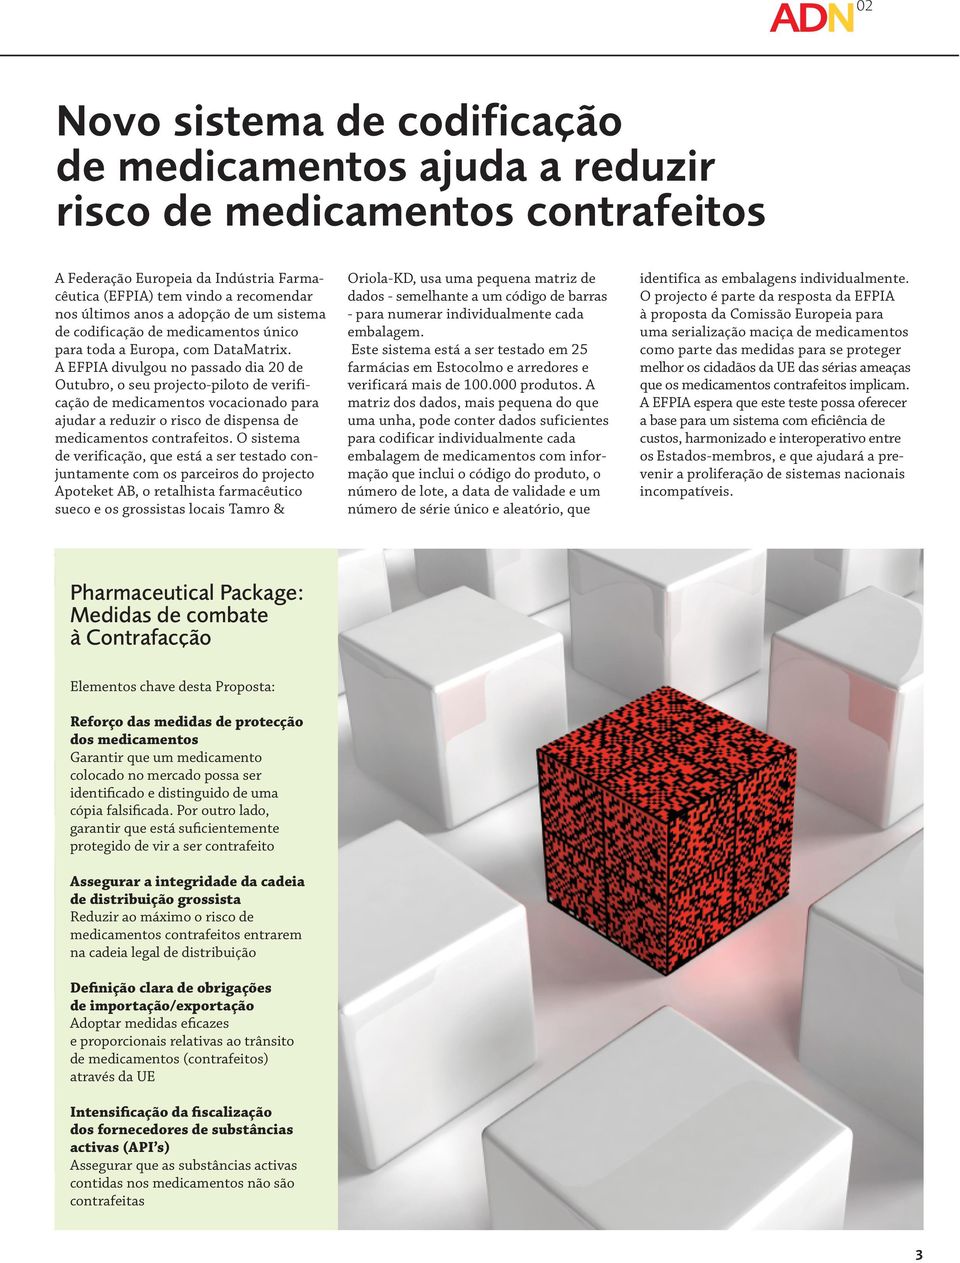 A EFPIA divulgou no passado dia 20 de Outubro, o seu projecto-piloto de verificação de medicamentos vocacionado para ajudar a reduzir o risco de dispensa de medicamentos contrafeitos.